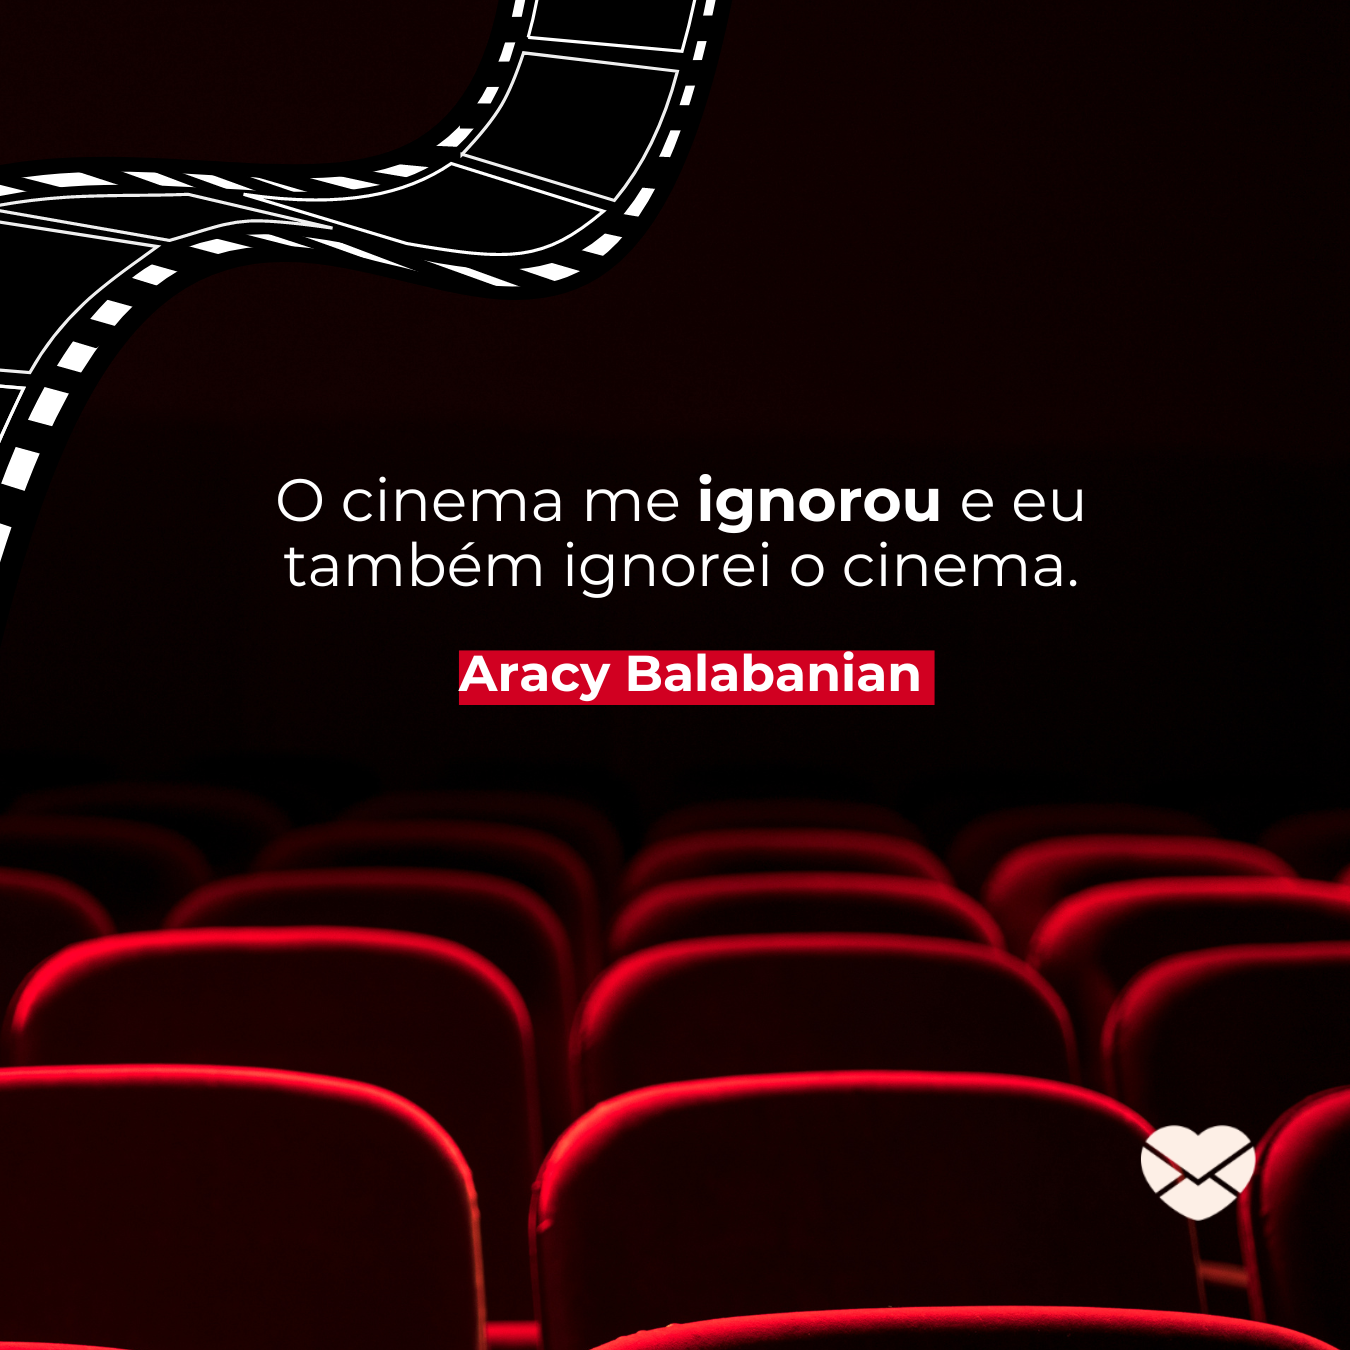 'O cinema me ignorou e eu também ignorei o cinema.' - Frases de Aracy Balabanian